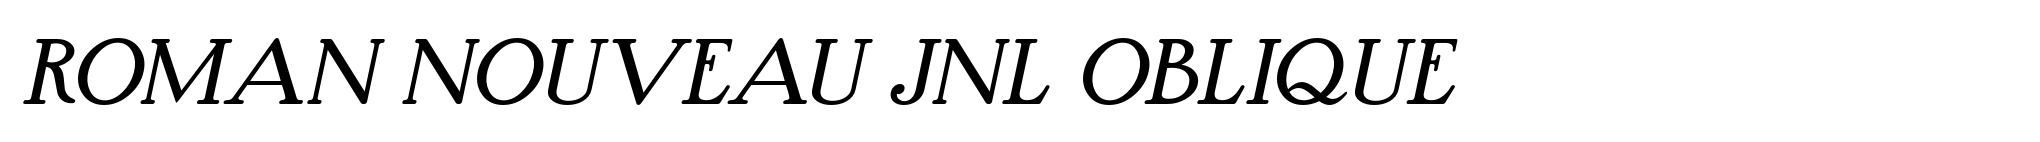 Roman Nouveau JNL Oblique image